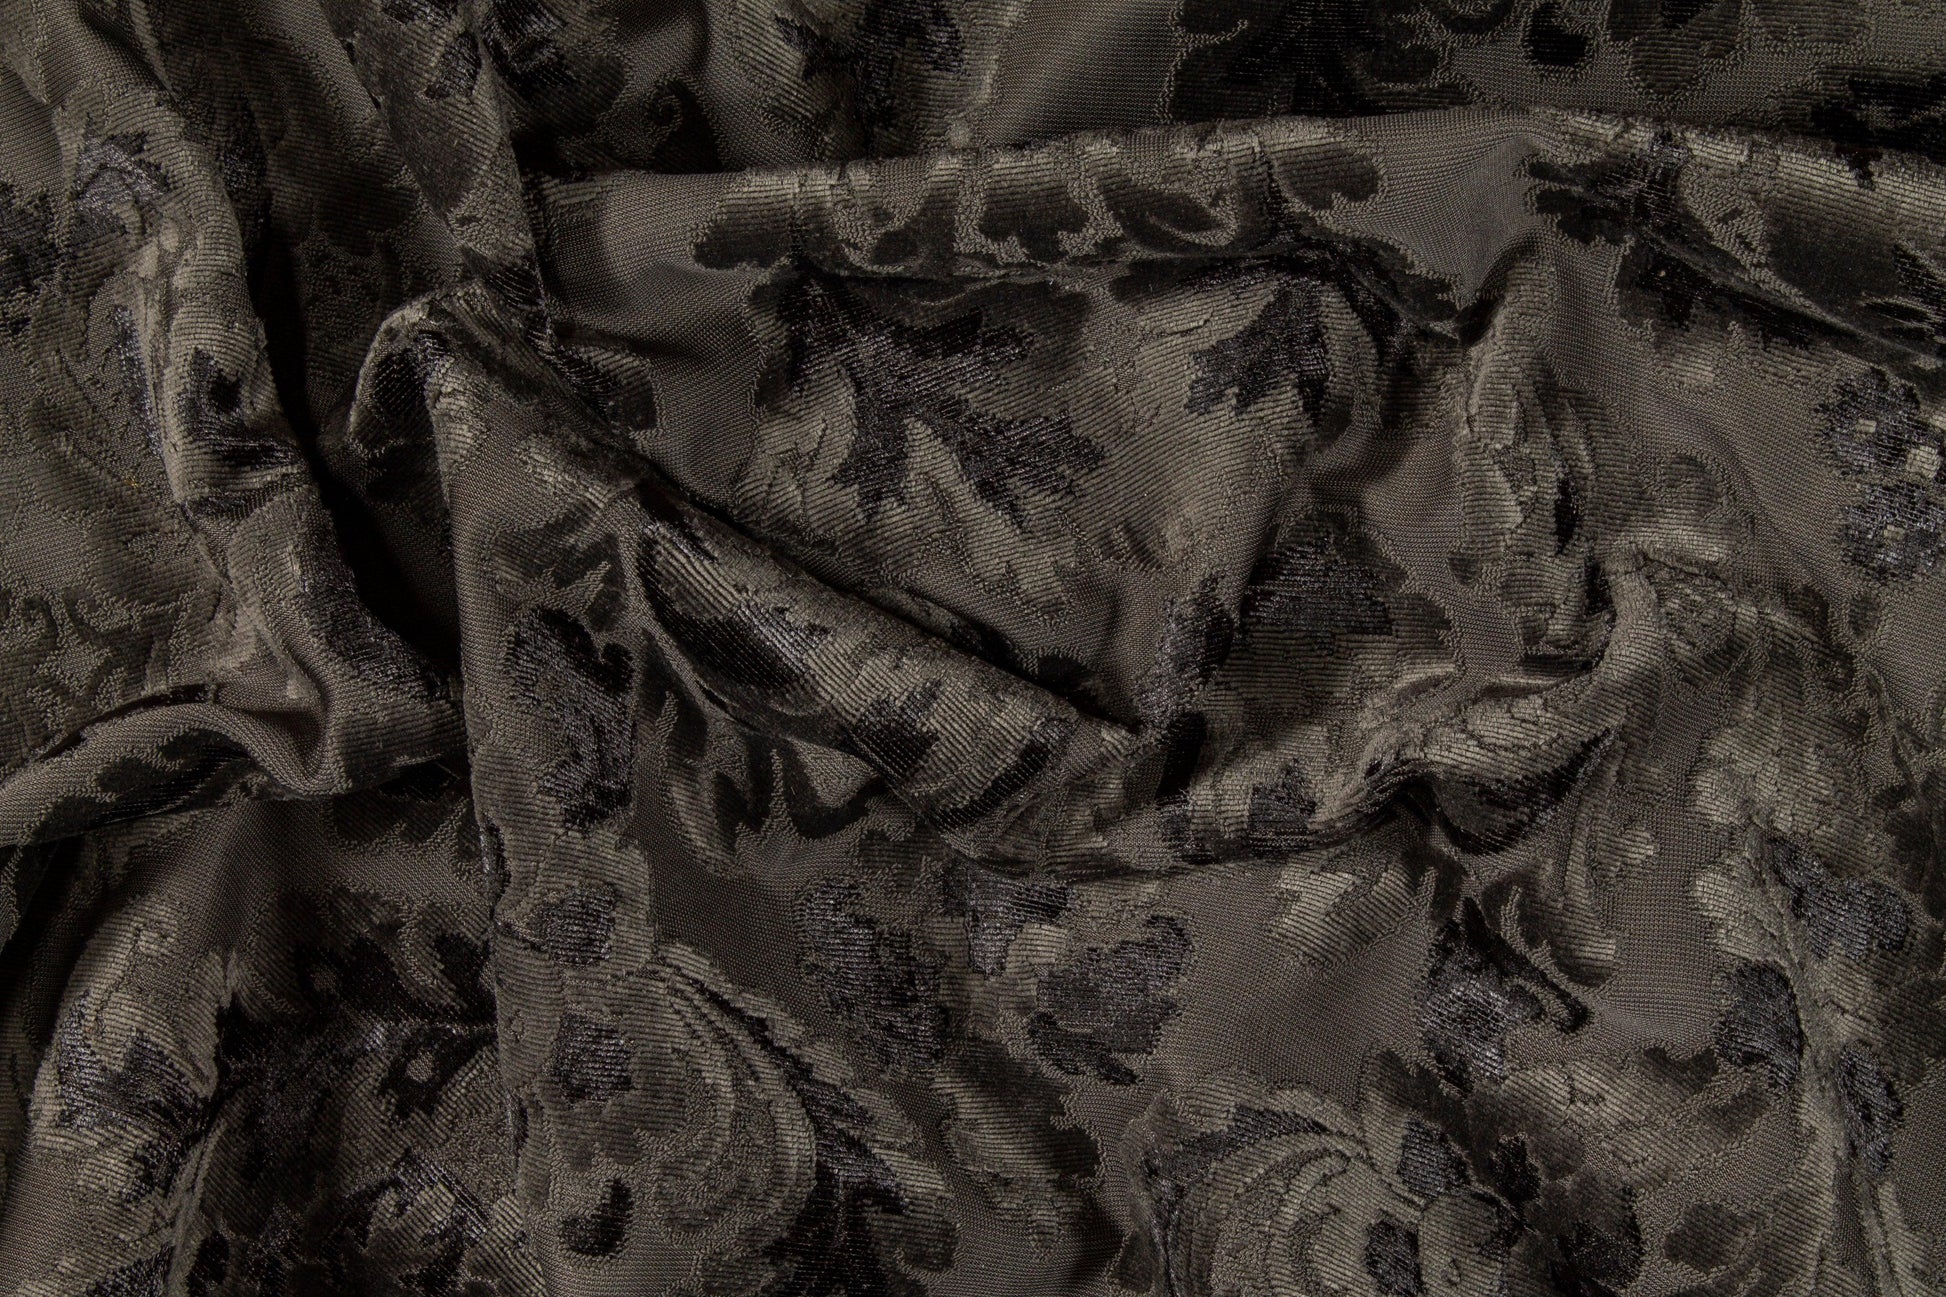 Damask Cut Velvet Upholstery - Charcoal Gray - Prime Fabrics